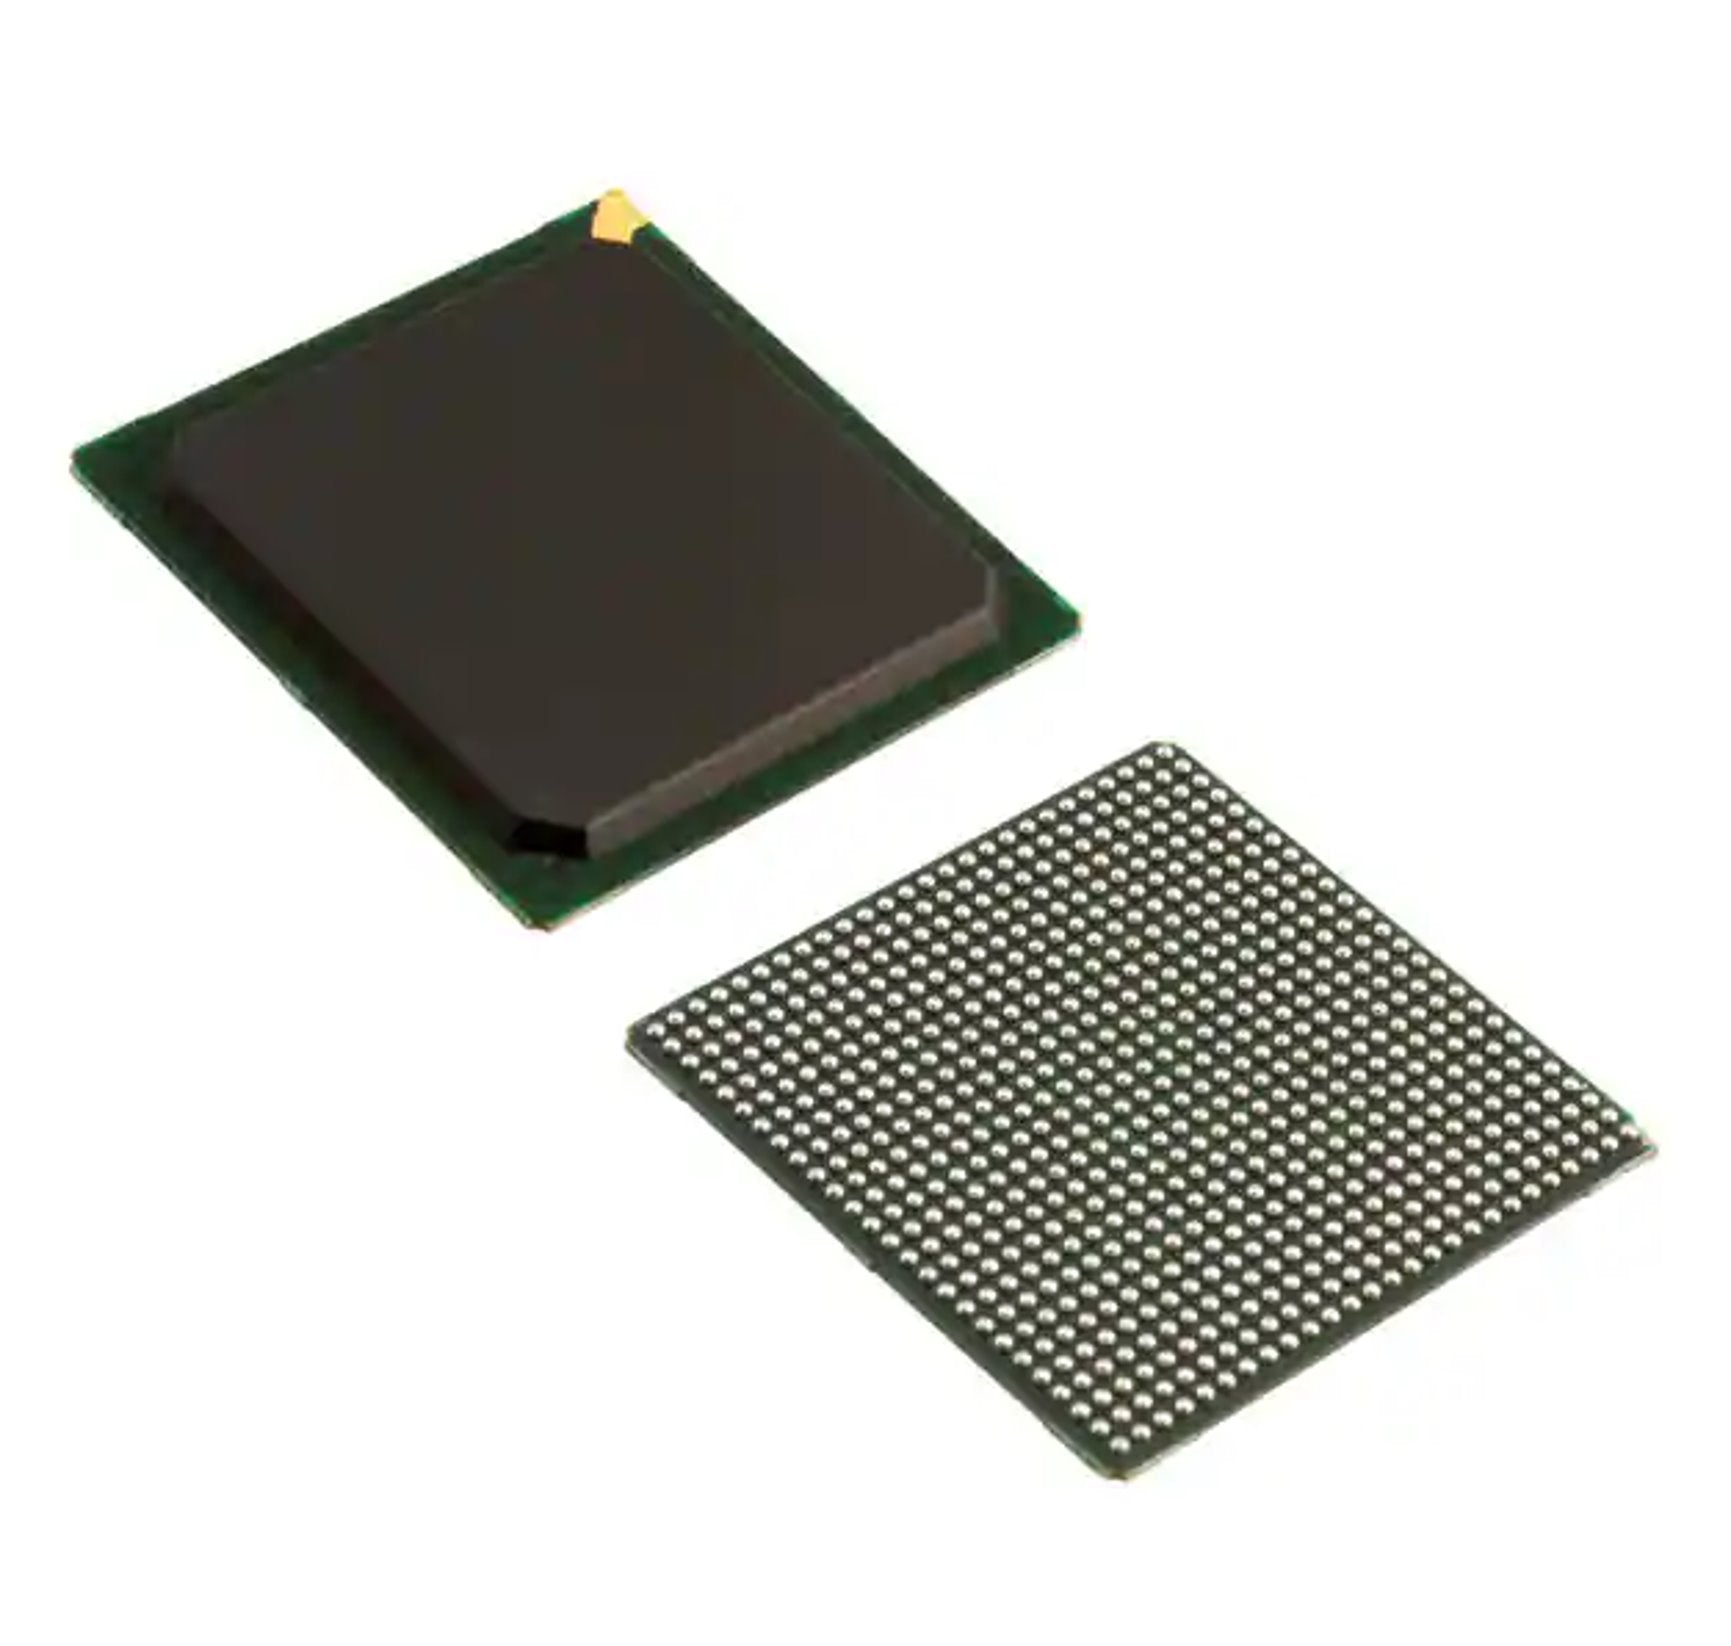 IC, XILINX FPGA SPARTAN 6 676-BGA, XC6SLX75-2FGG676C - DEX